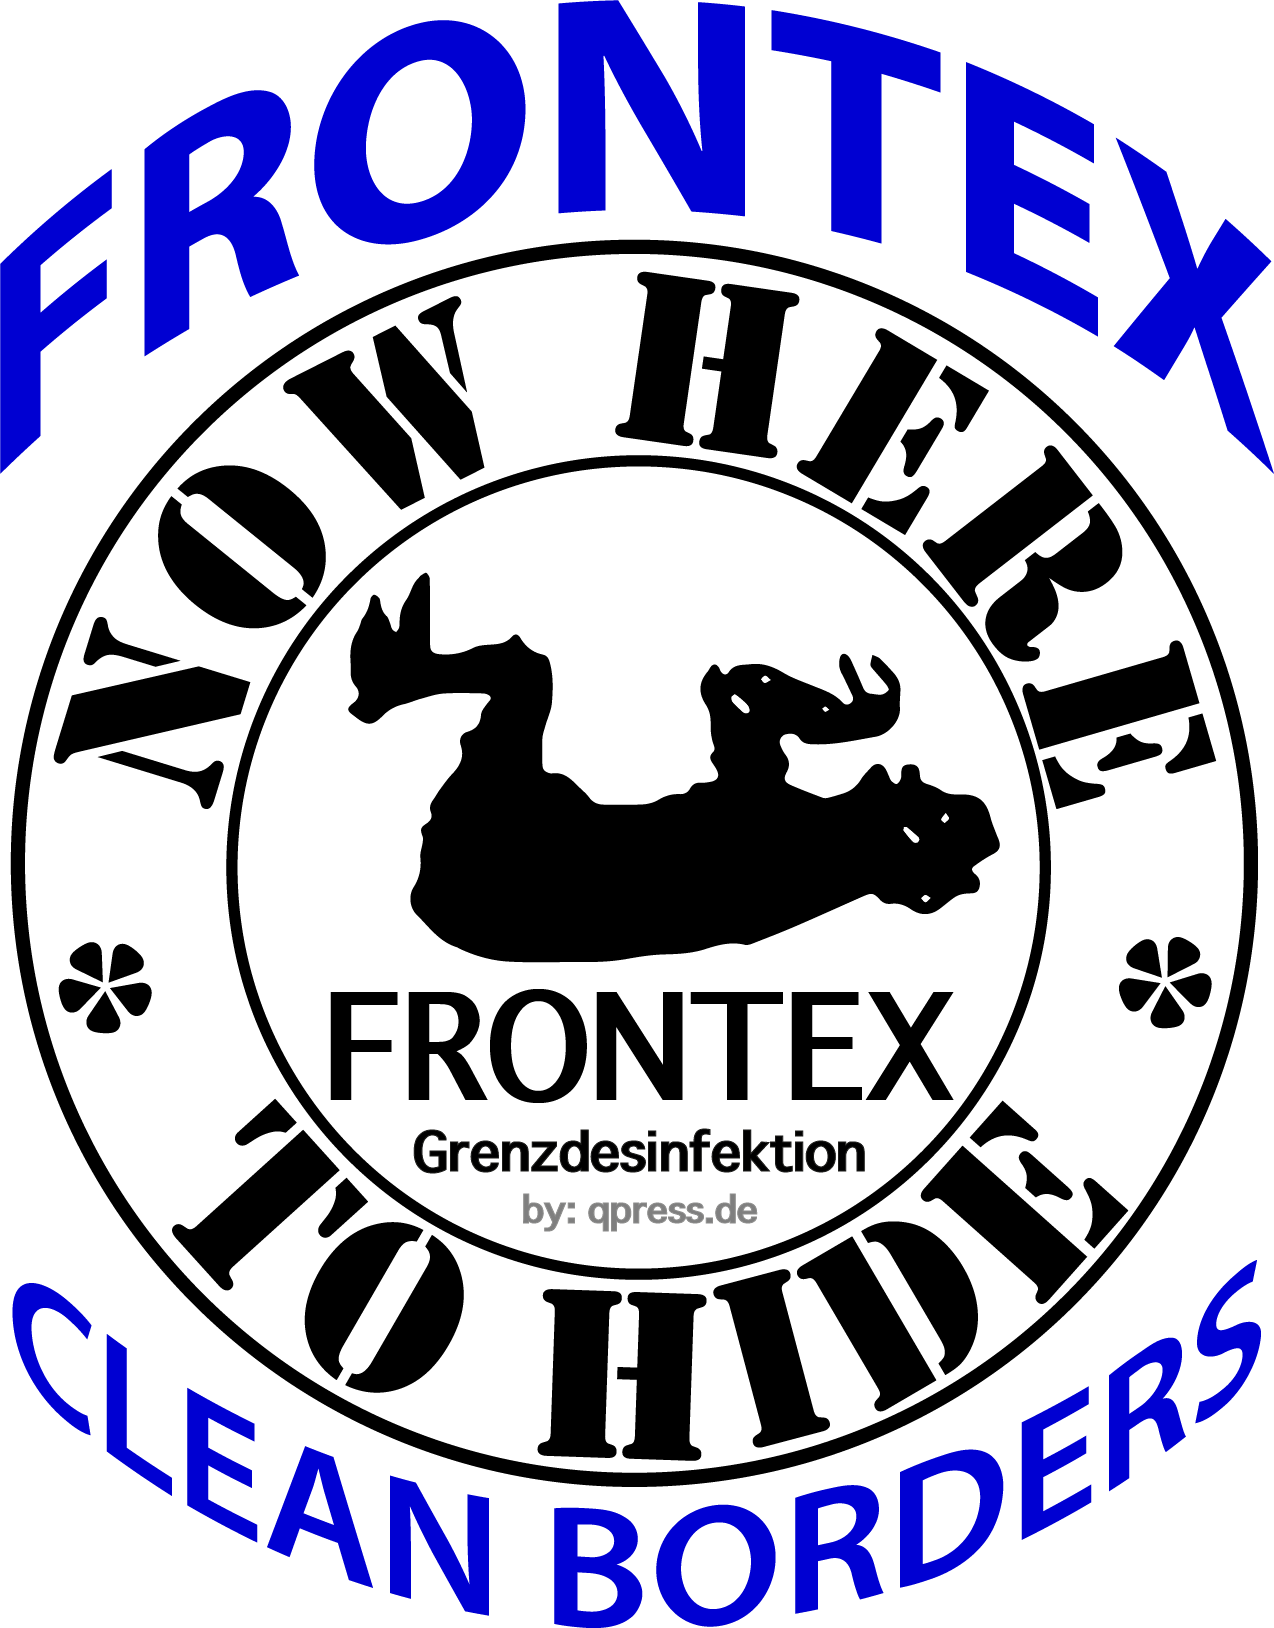 Now here nowhere to hide frontex grenzdesinfektion Logo grenzsicherung fluechtlingsabwehr